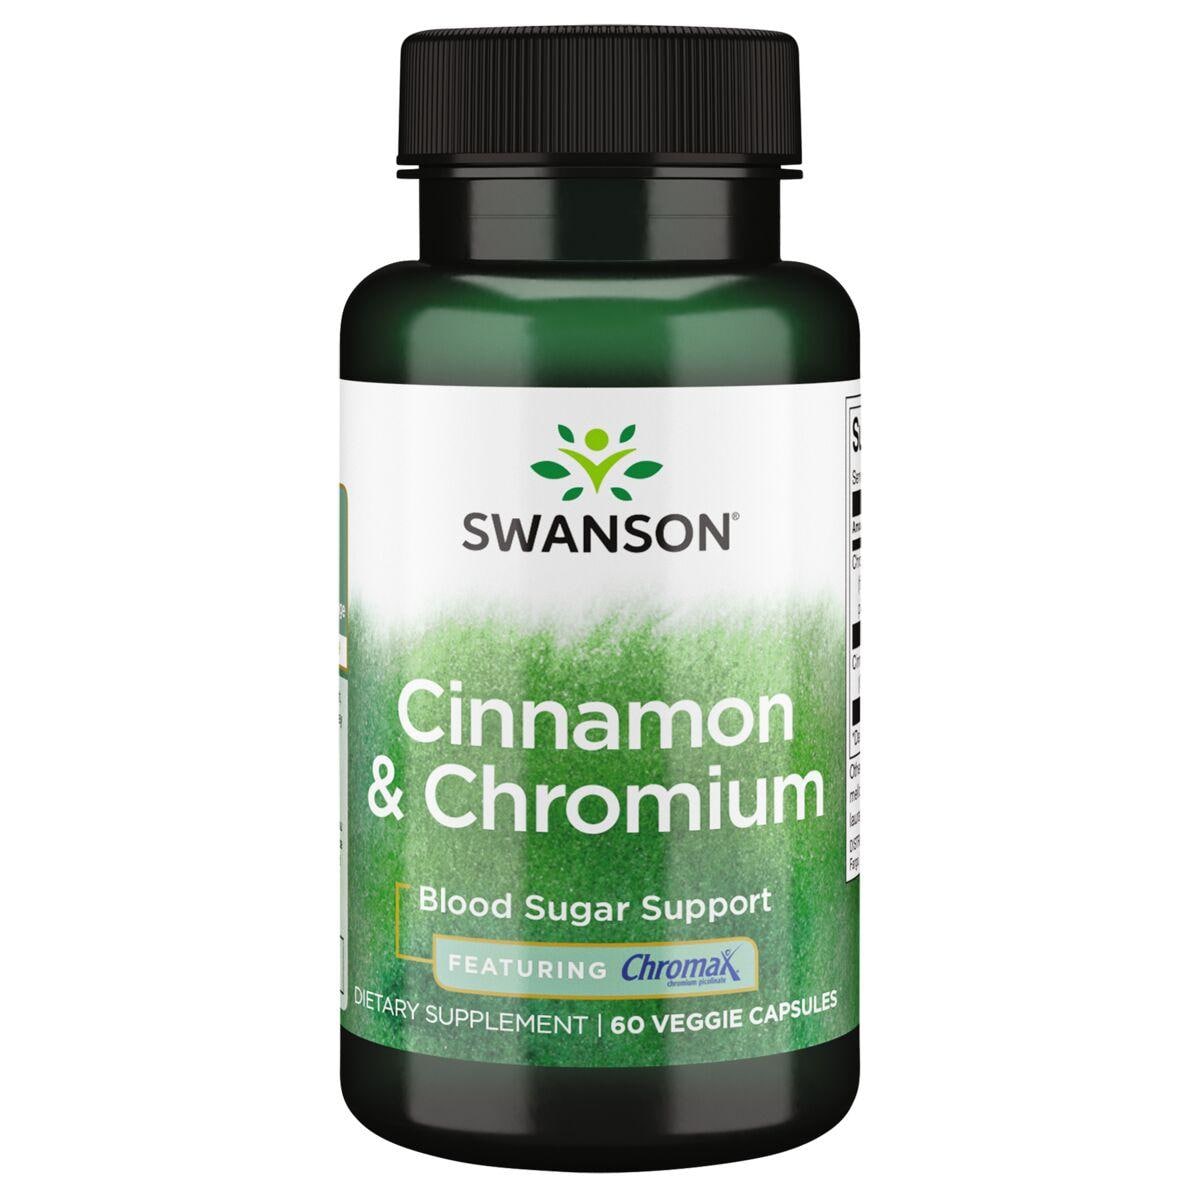 Swanson Premium Cinnamon & Chromium - Featuring Chromax Vitamin | 60 Veg Caps